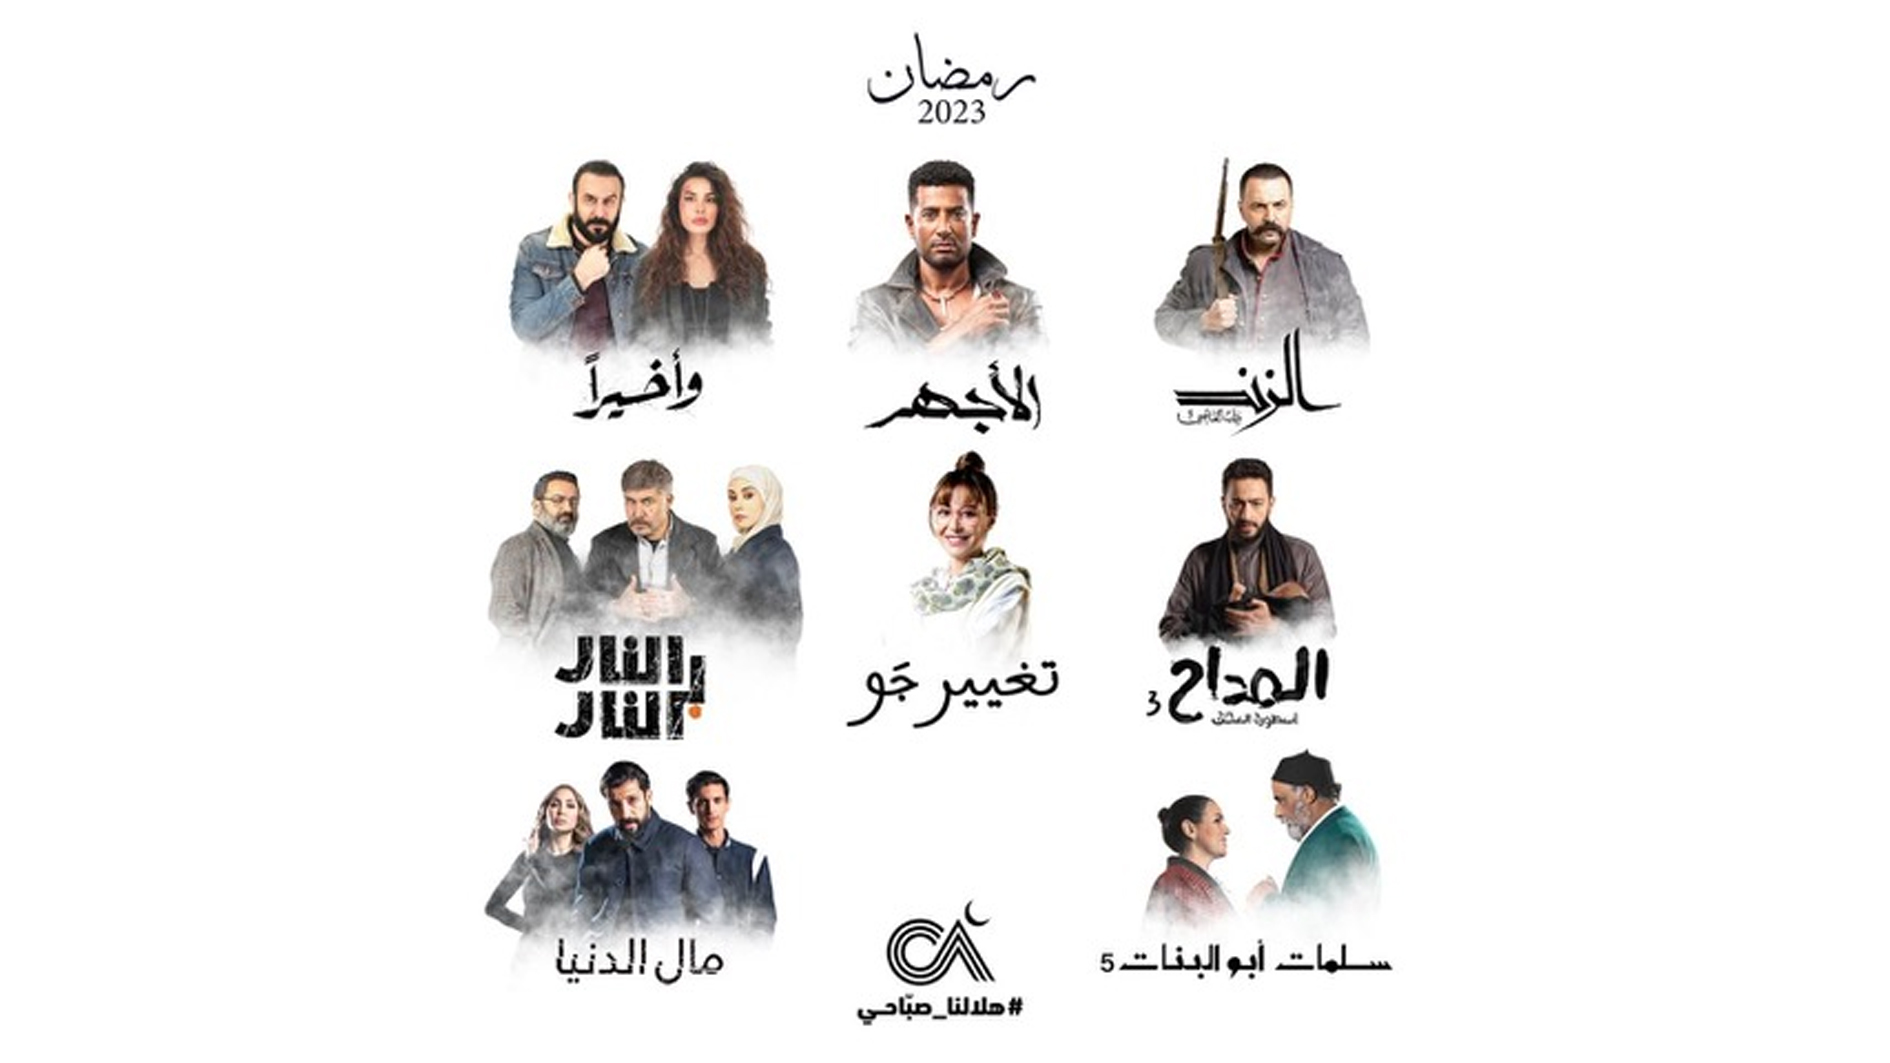 الصبّاح إخوان تخوض سباق الدراما في رمضان ب 8 مسلسلات